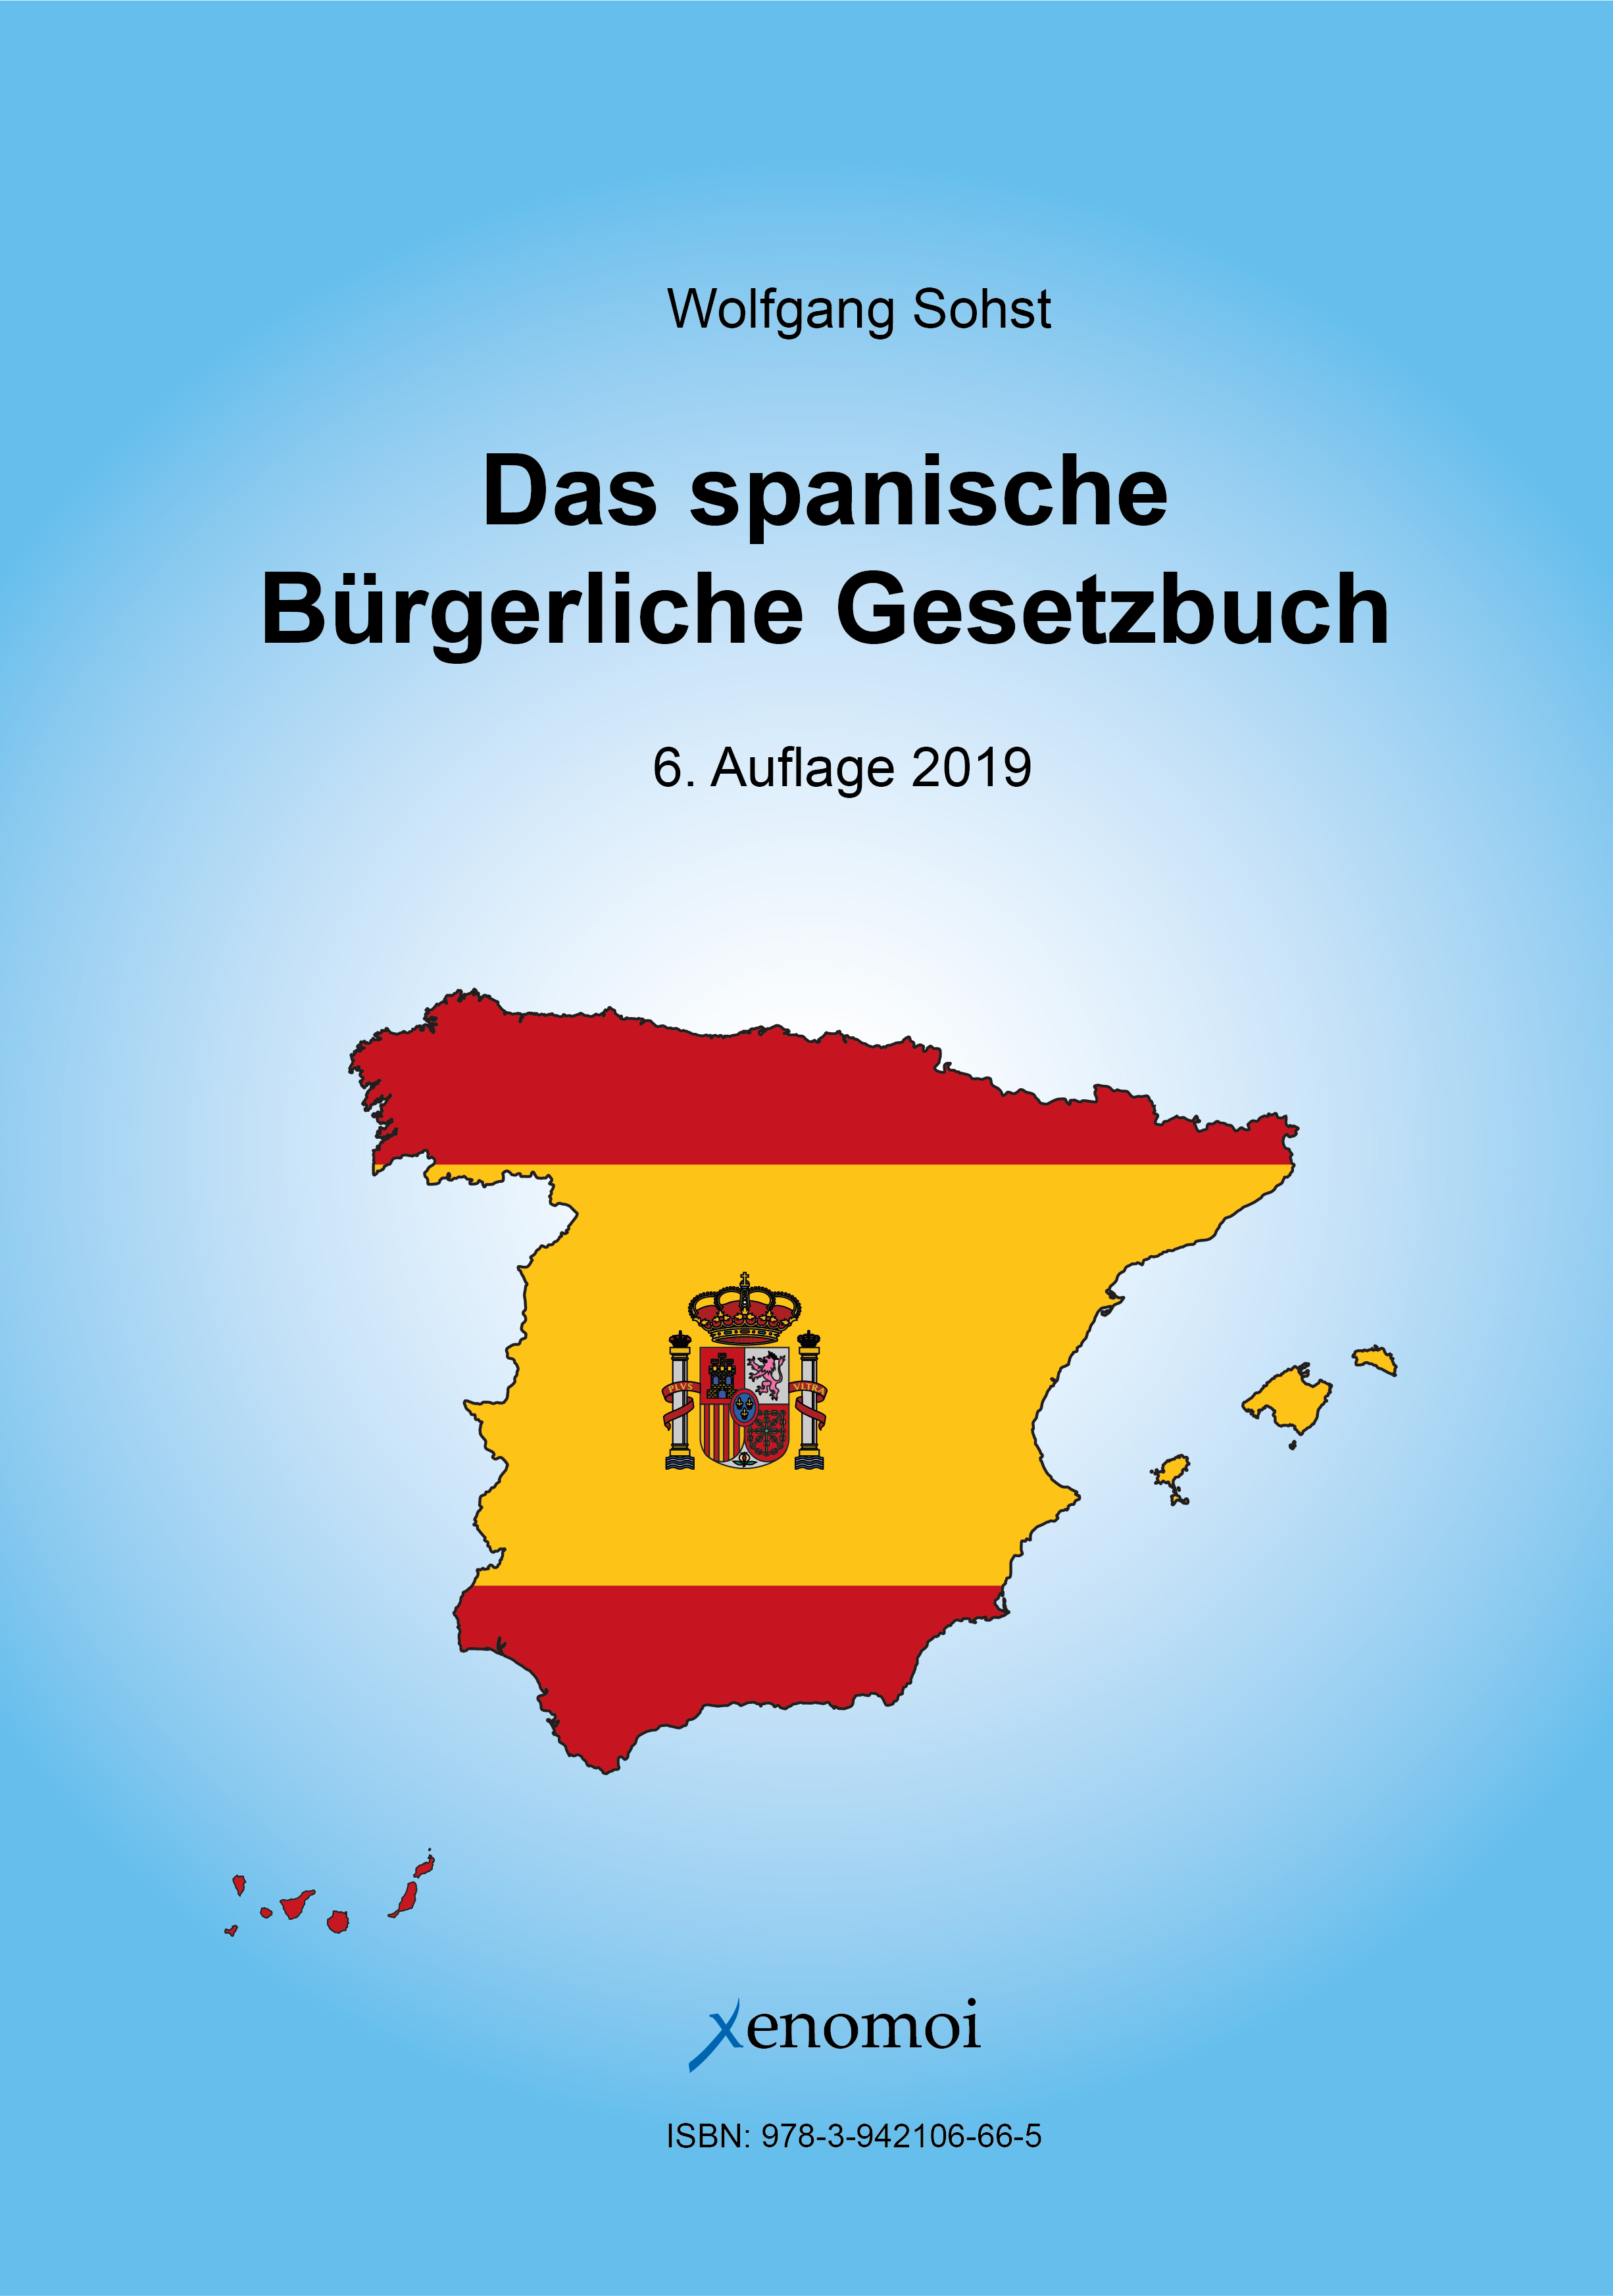 Das spanische Bürgerliches Gesetzbuch (Código Civil) und spanisches Notargesetz